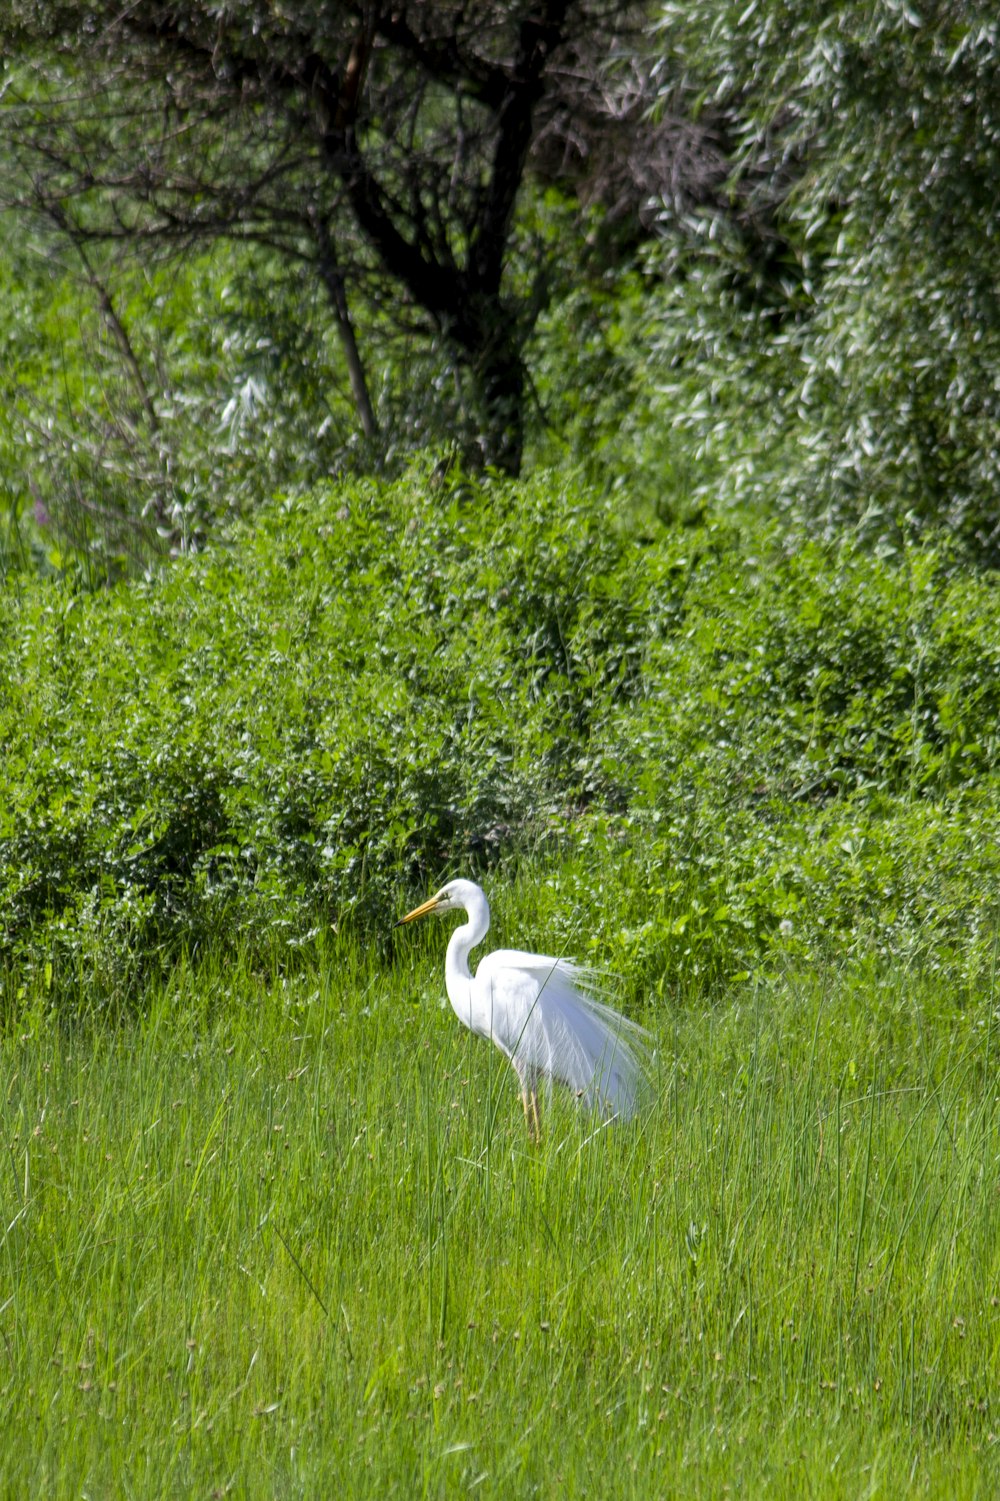 a white bird in a grassy area